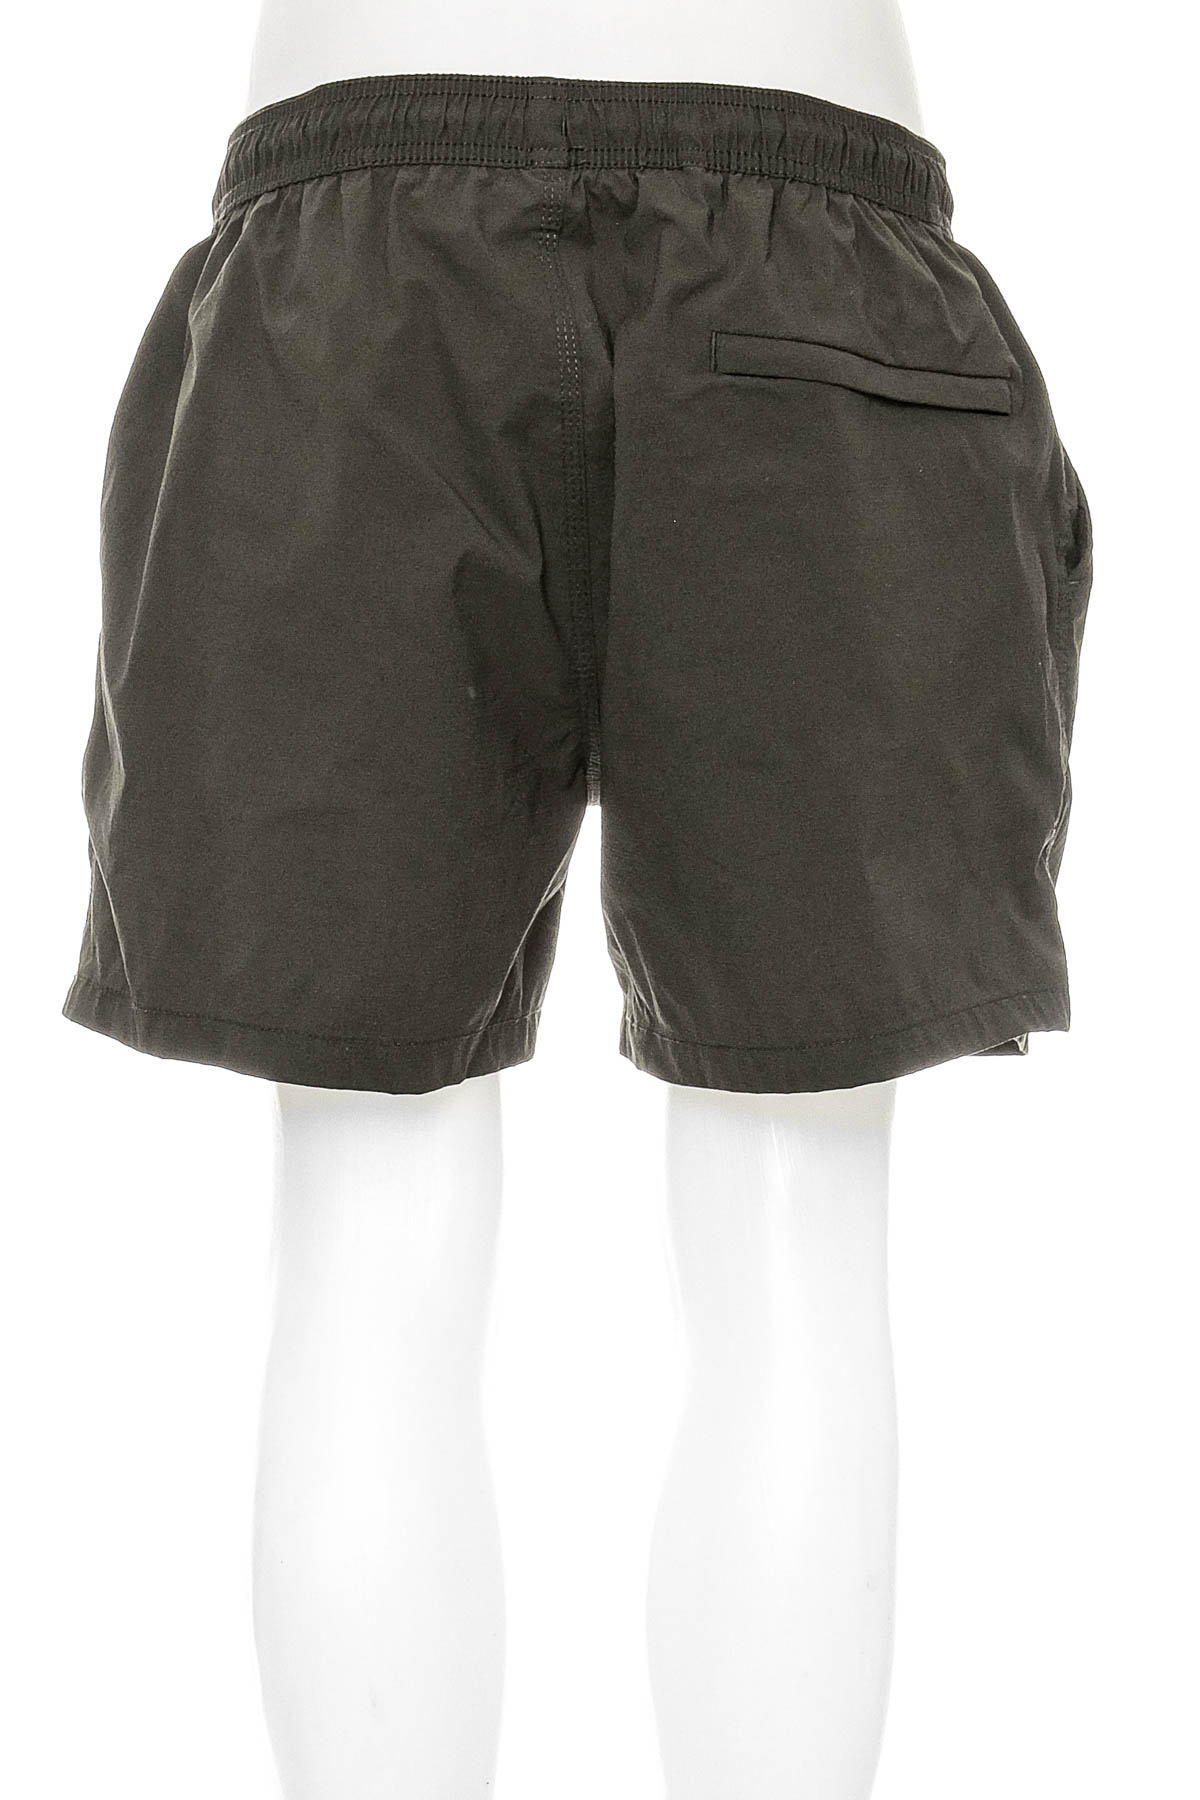 Men's shorts - FSBN - 1